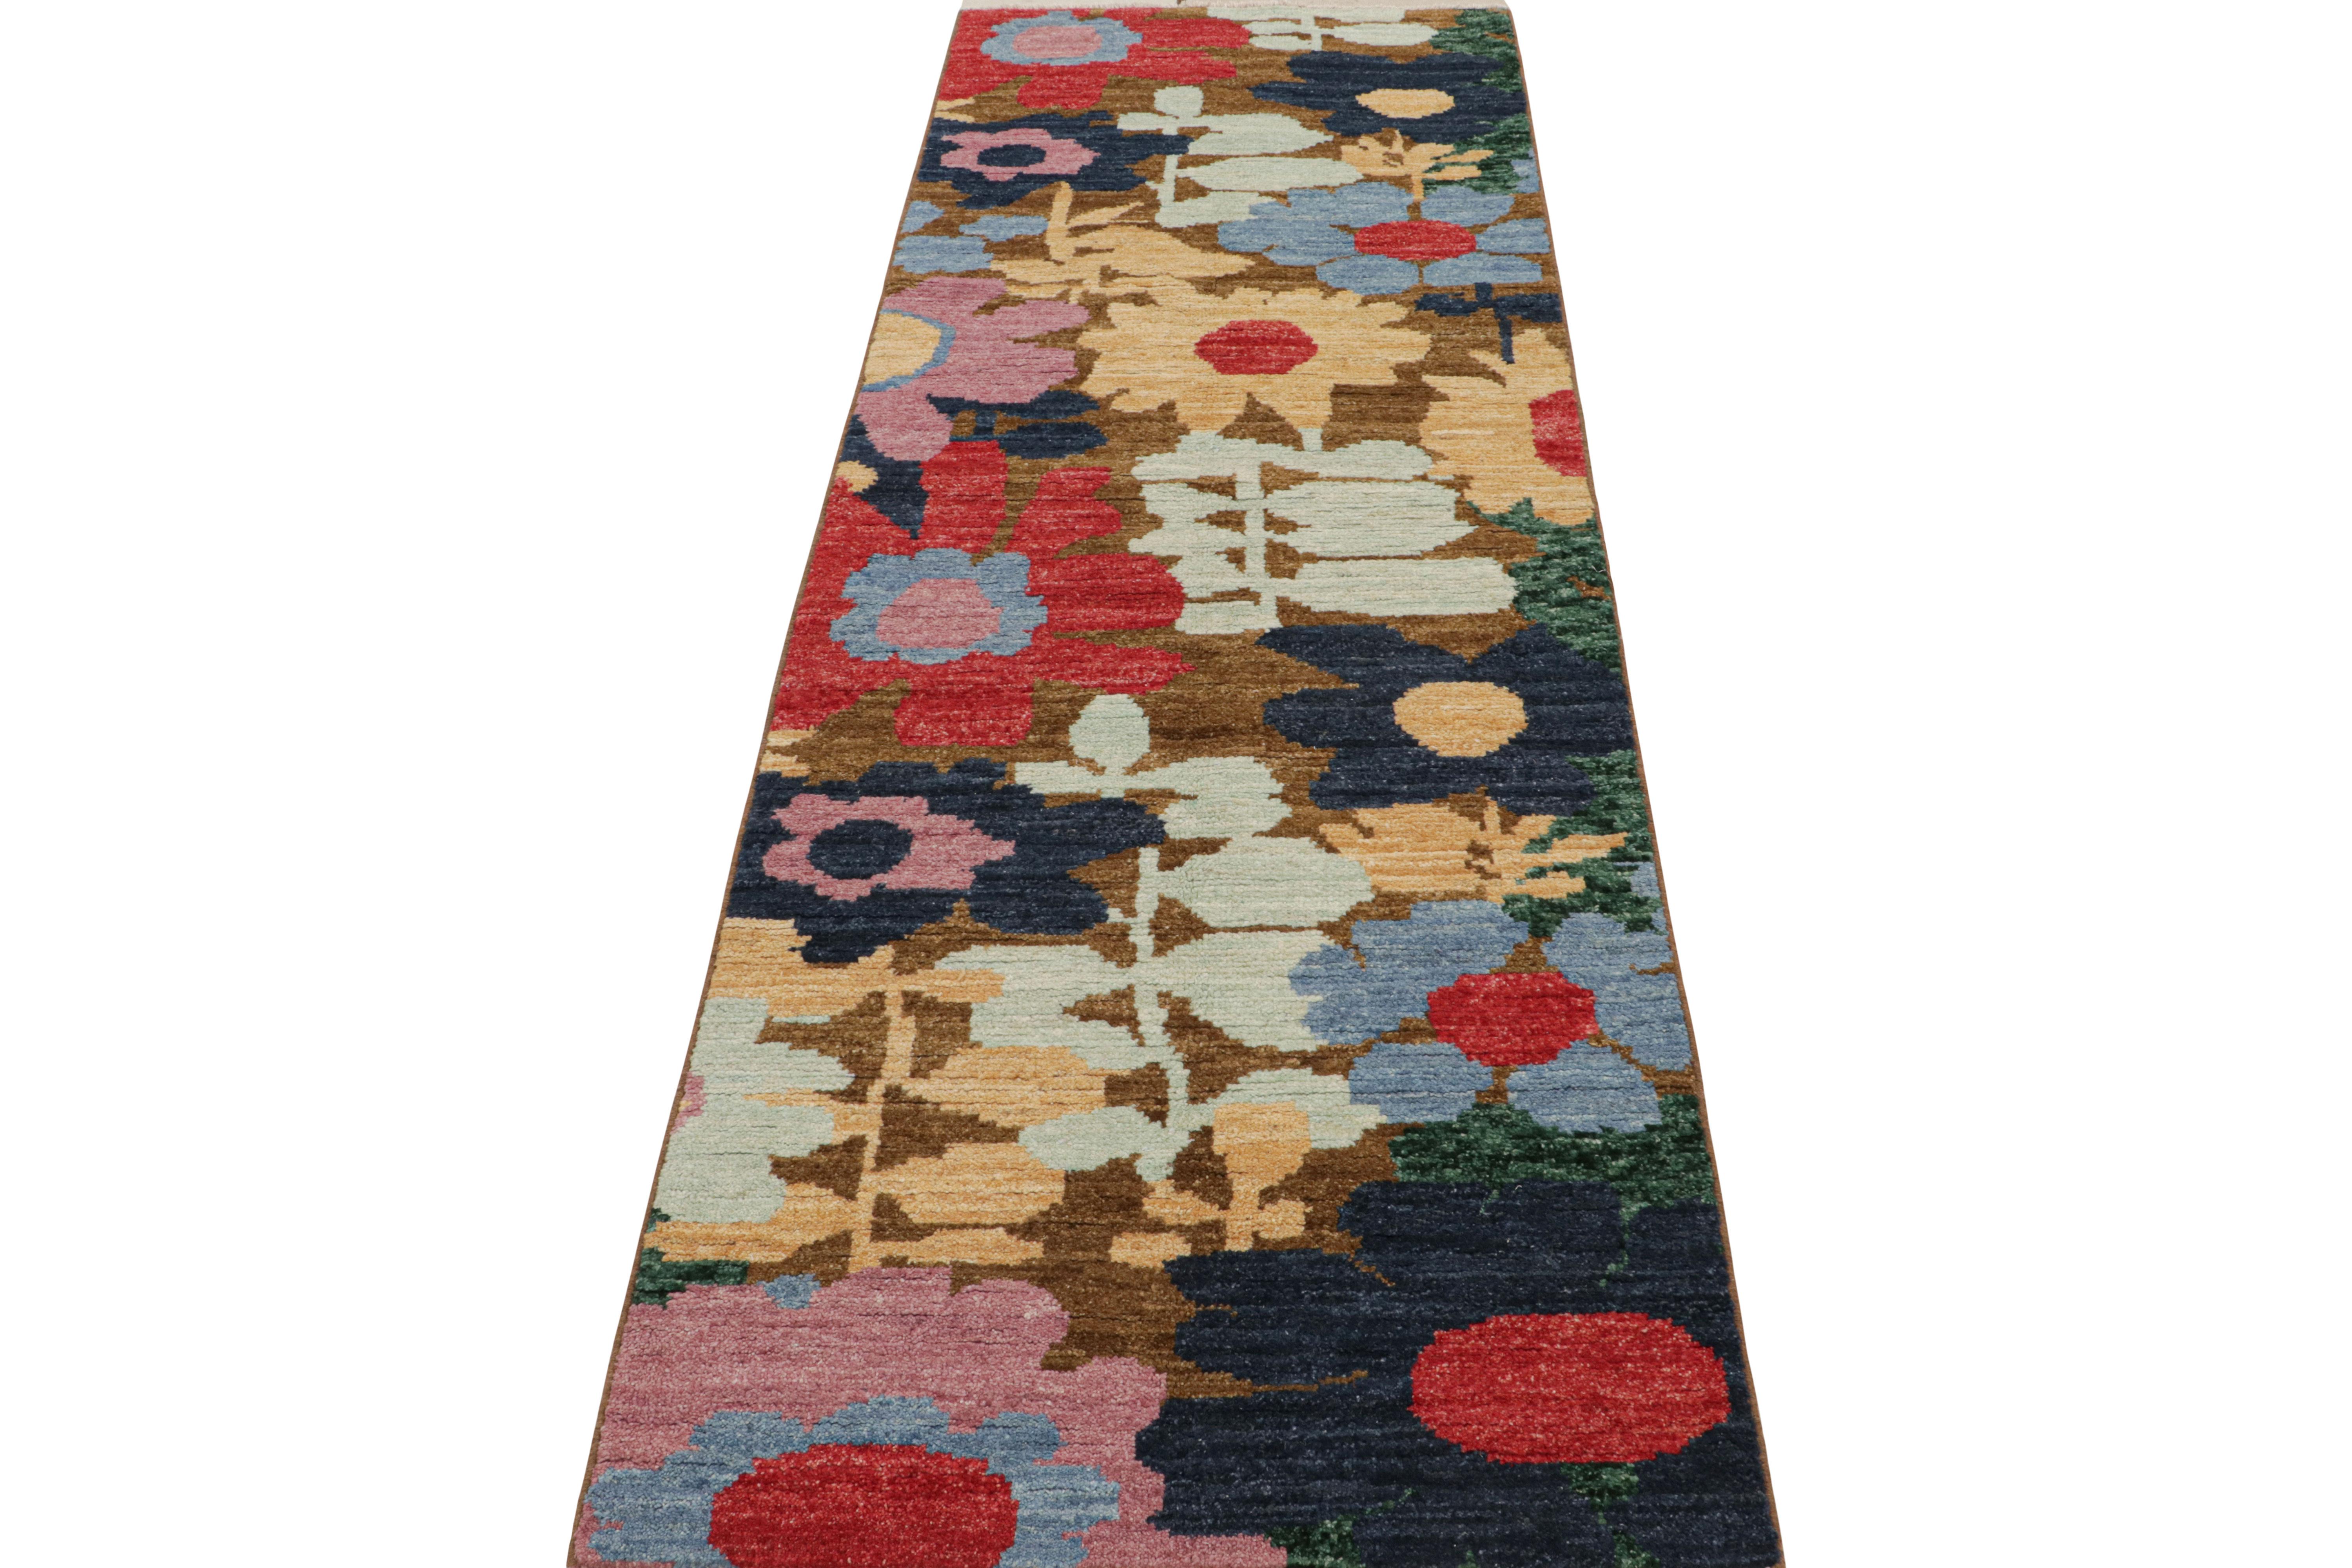 Dieser zeitgenössische 3x8 Läufer ist eine aufregende neue Ergänzung der Modern-Teppichkollektion von Rug & Kilim. Das aus Wolle handgeknüpfte Design ist eine kühne, abstrakte Interpretation botanischer Motive.

Über das Design: 

Dieses besondere